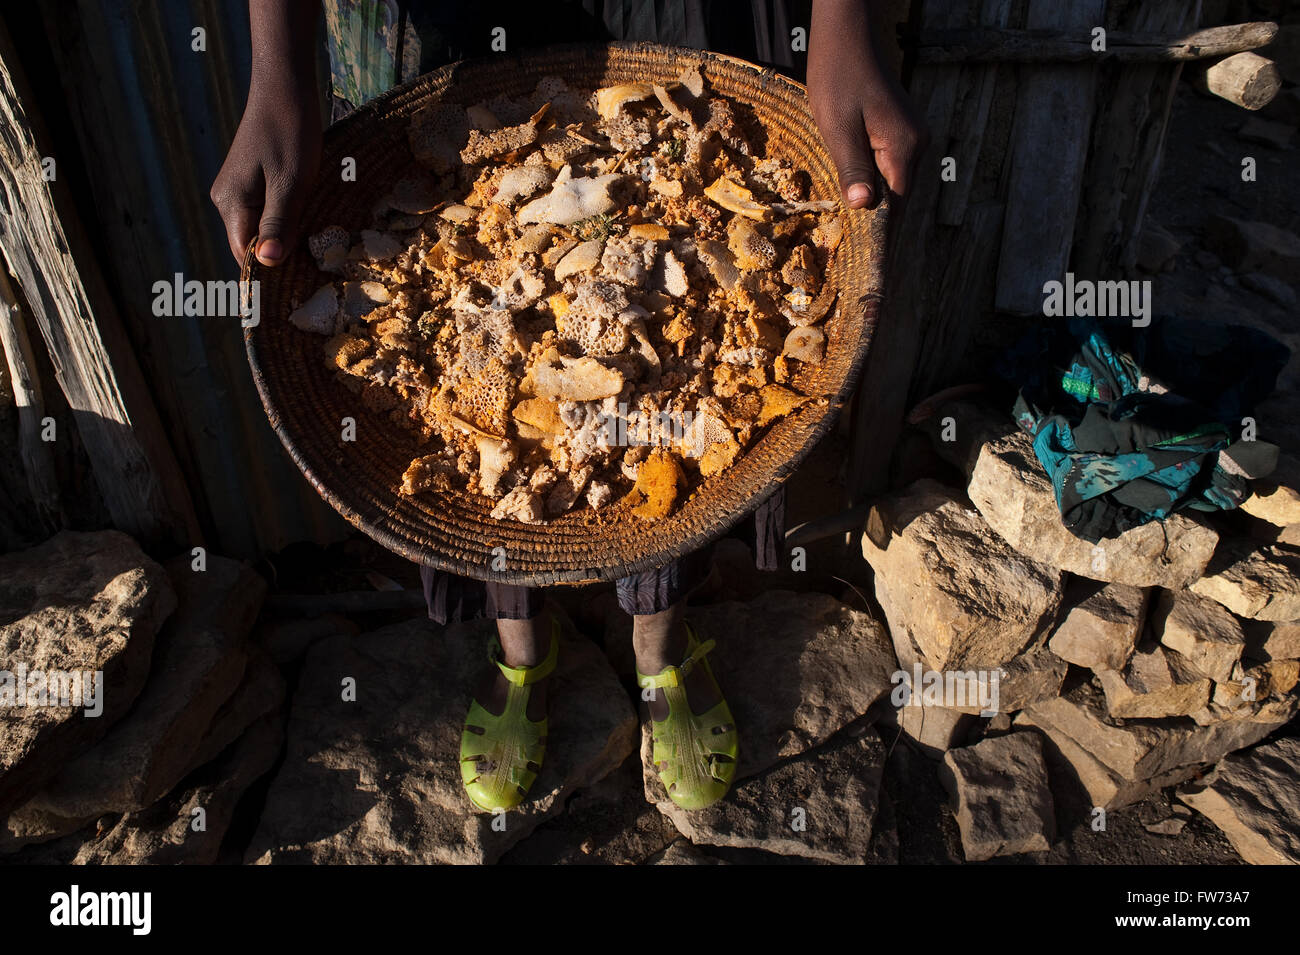 Eine arme Frau, die Zugehörigkeit zum Volk Agaw zeigt einen Korb voller Lebensmittel (z.B. Reste von Restaurants und Einzelpersonen gegeben) Stockfoto